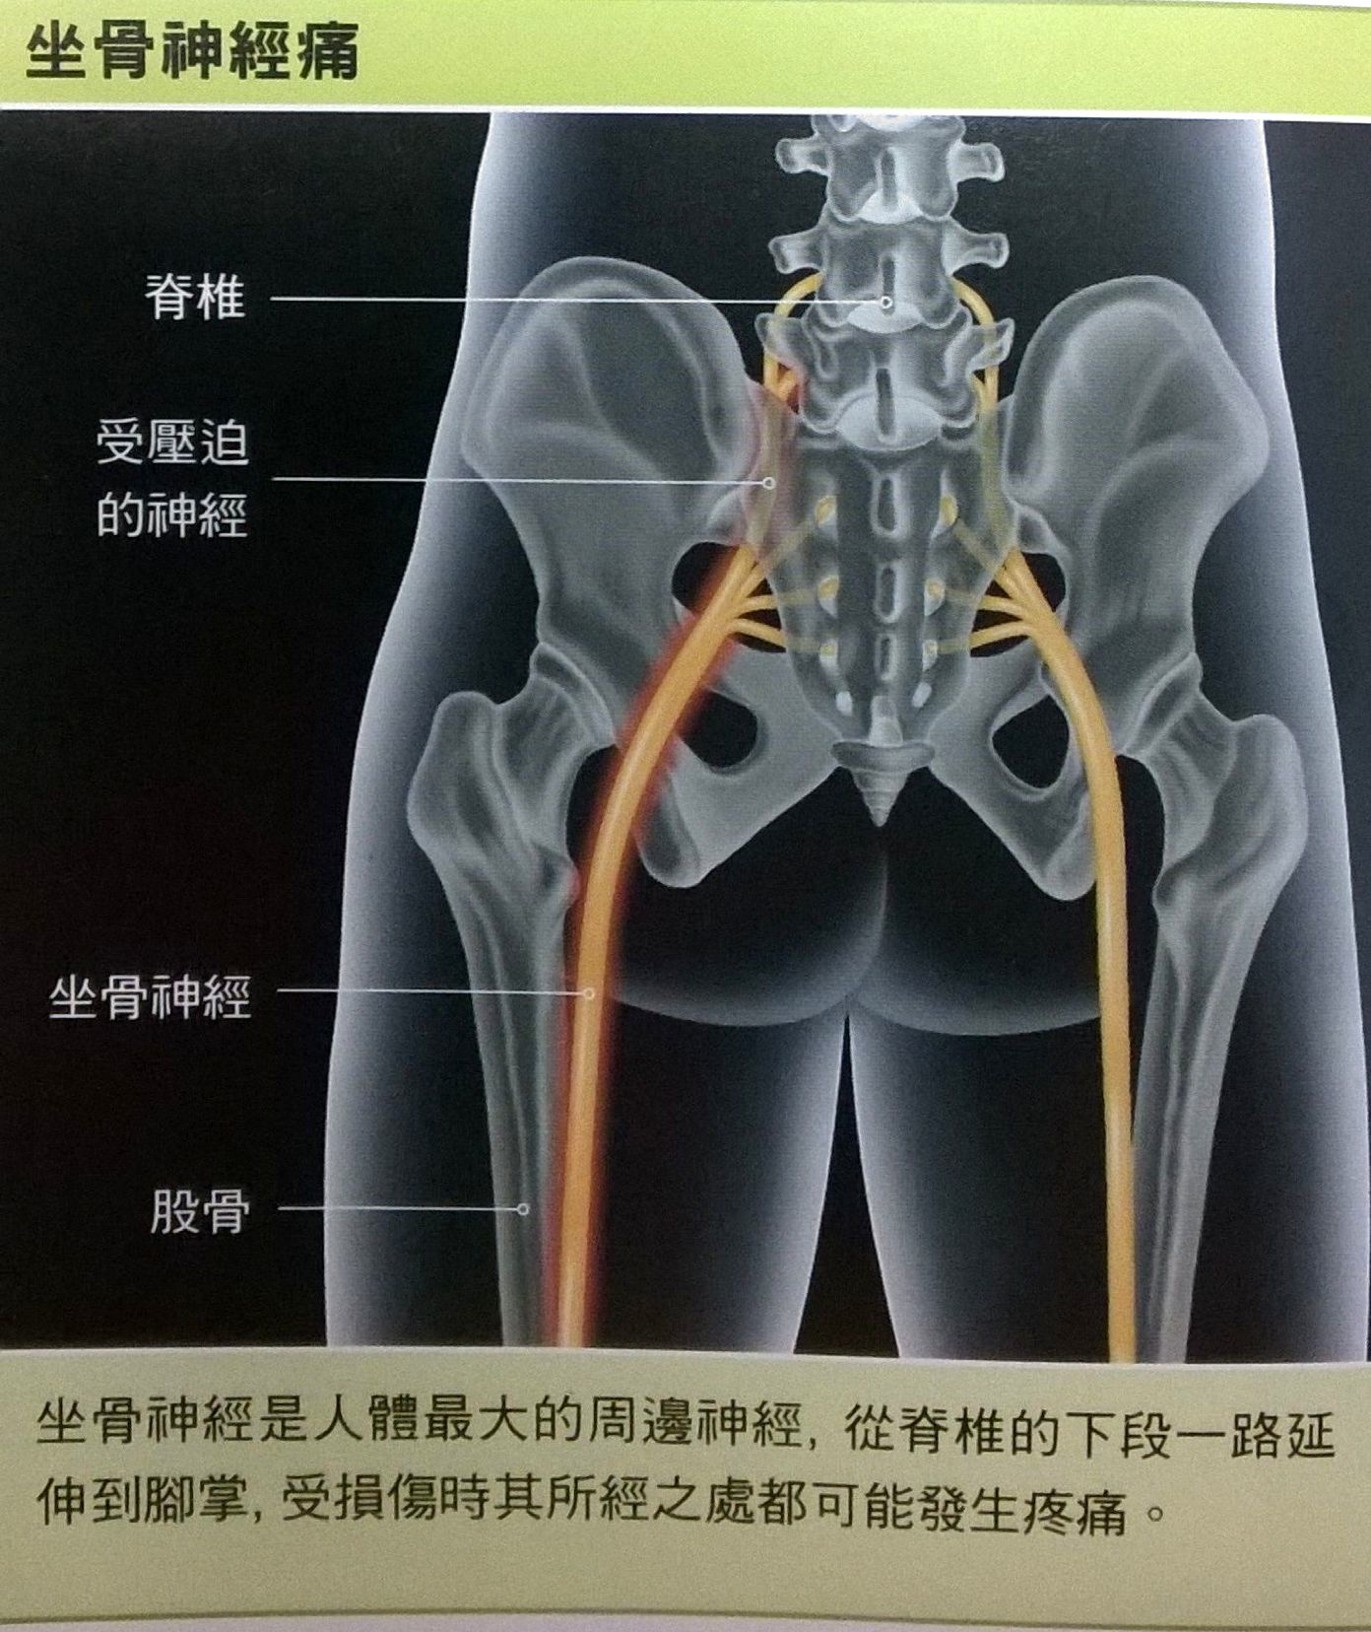 如何诊断和治疗坐骨神经痛?_滨州市微创外科治疗中心-滨州万寿堂医院